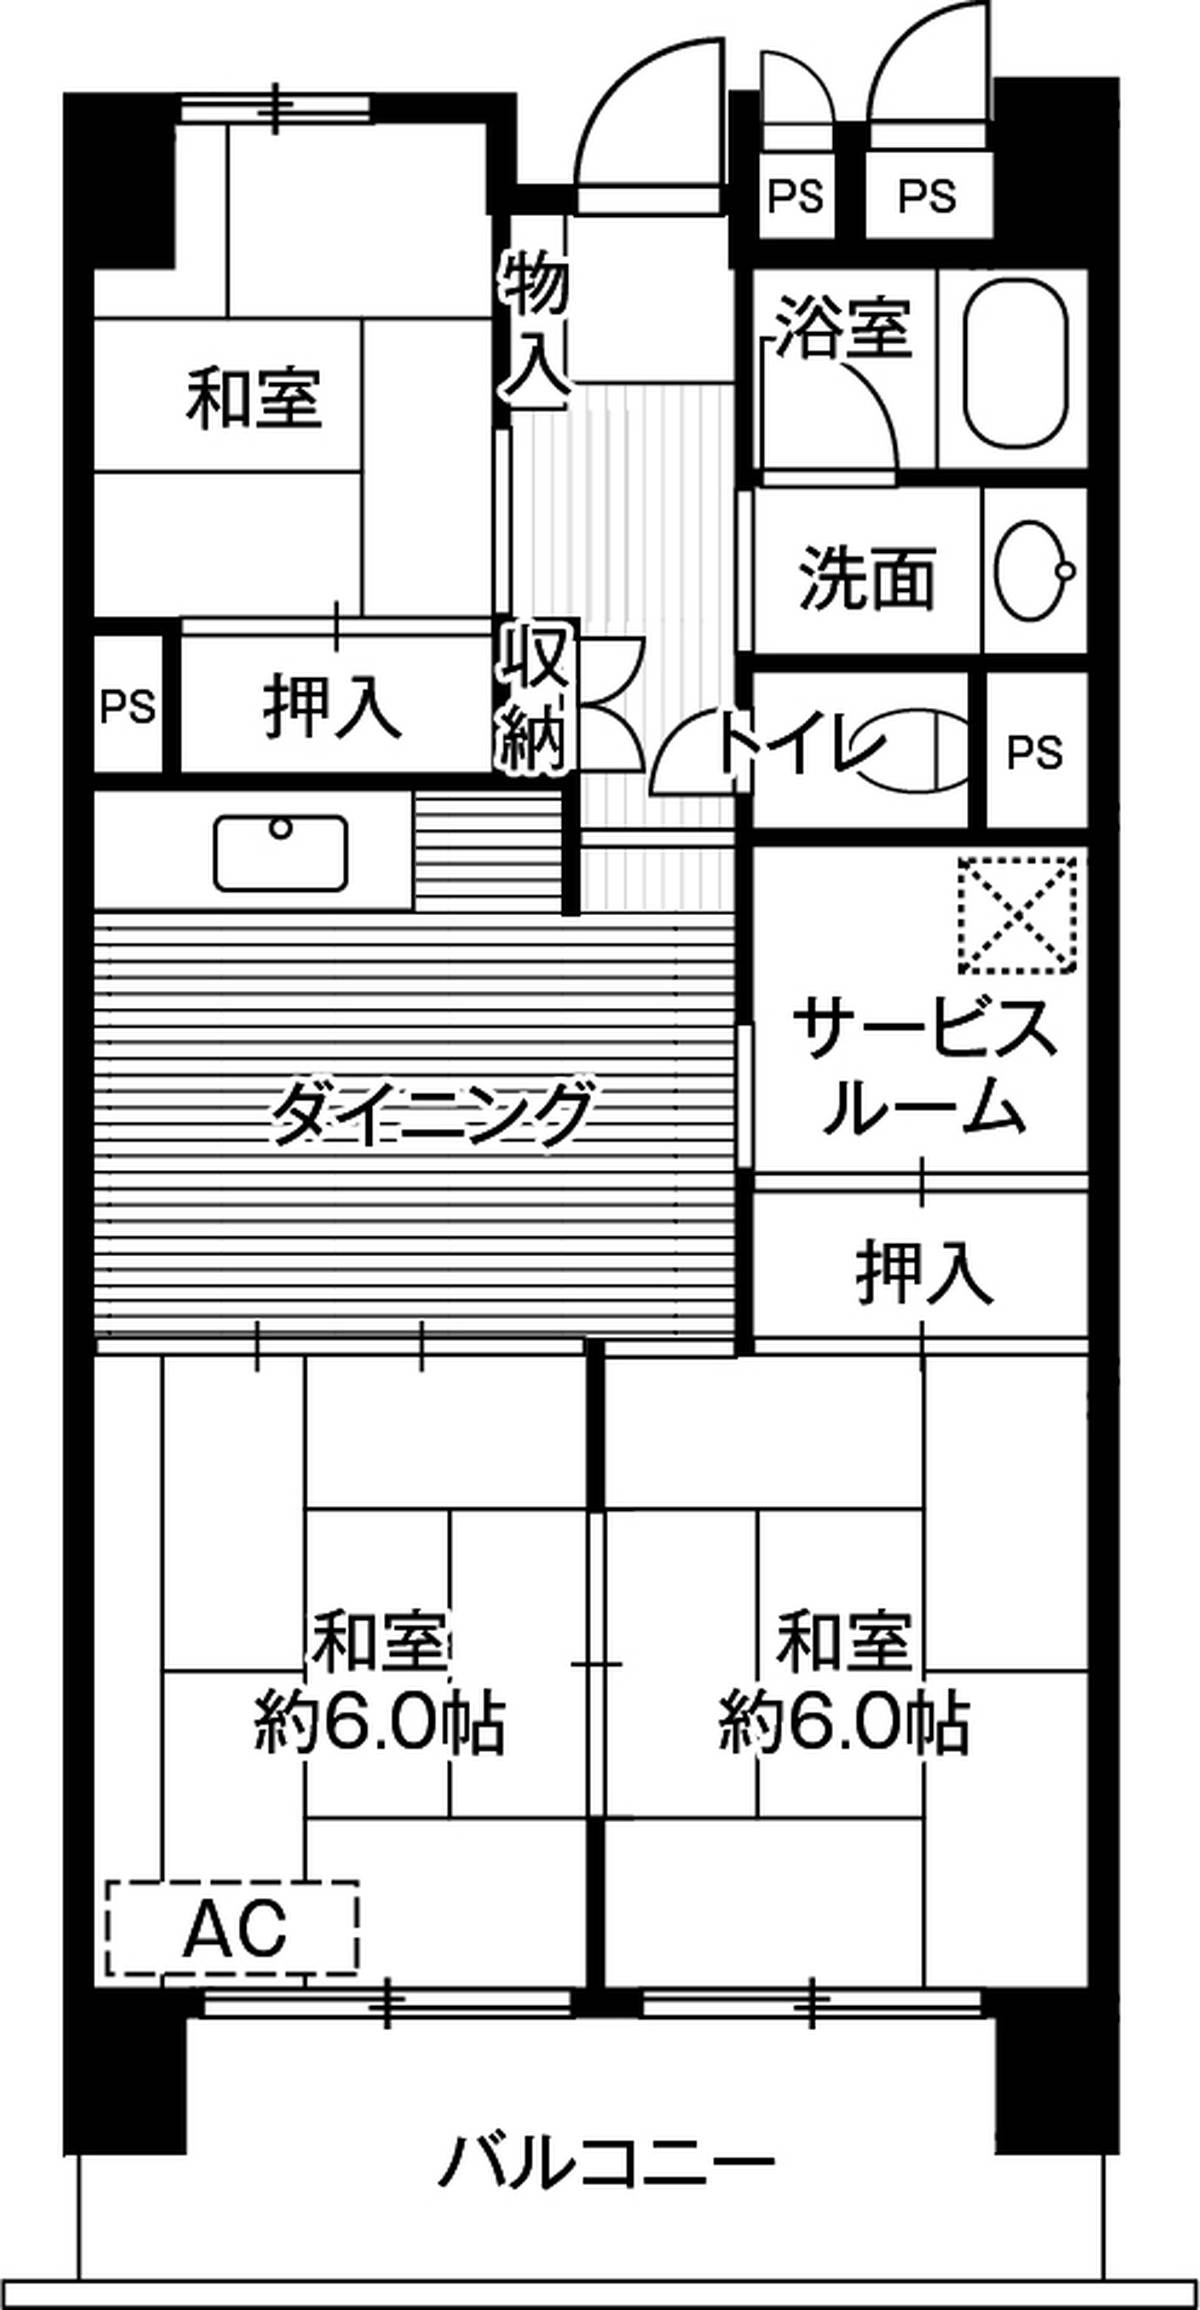 Sơ đồ phòng 3SDK của Village House Narita Azuma Tower ở Narita-shi